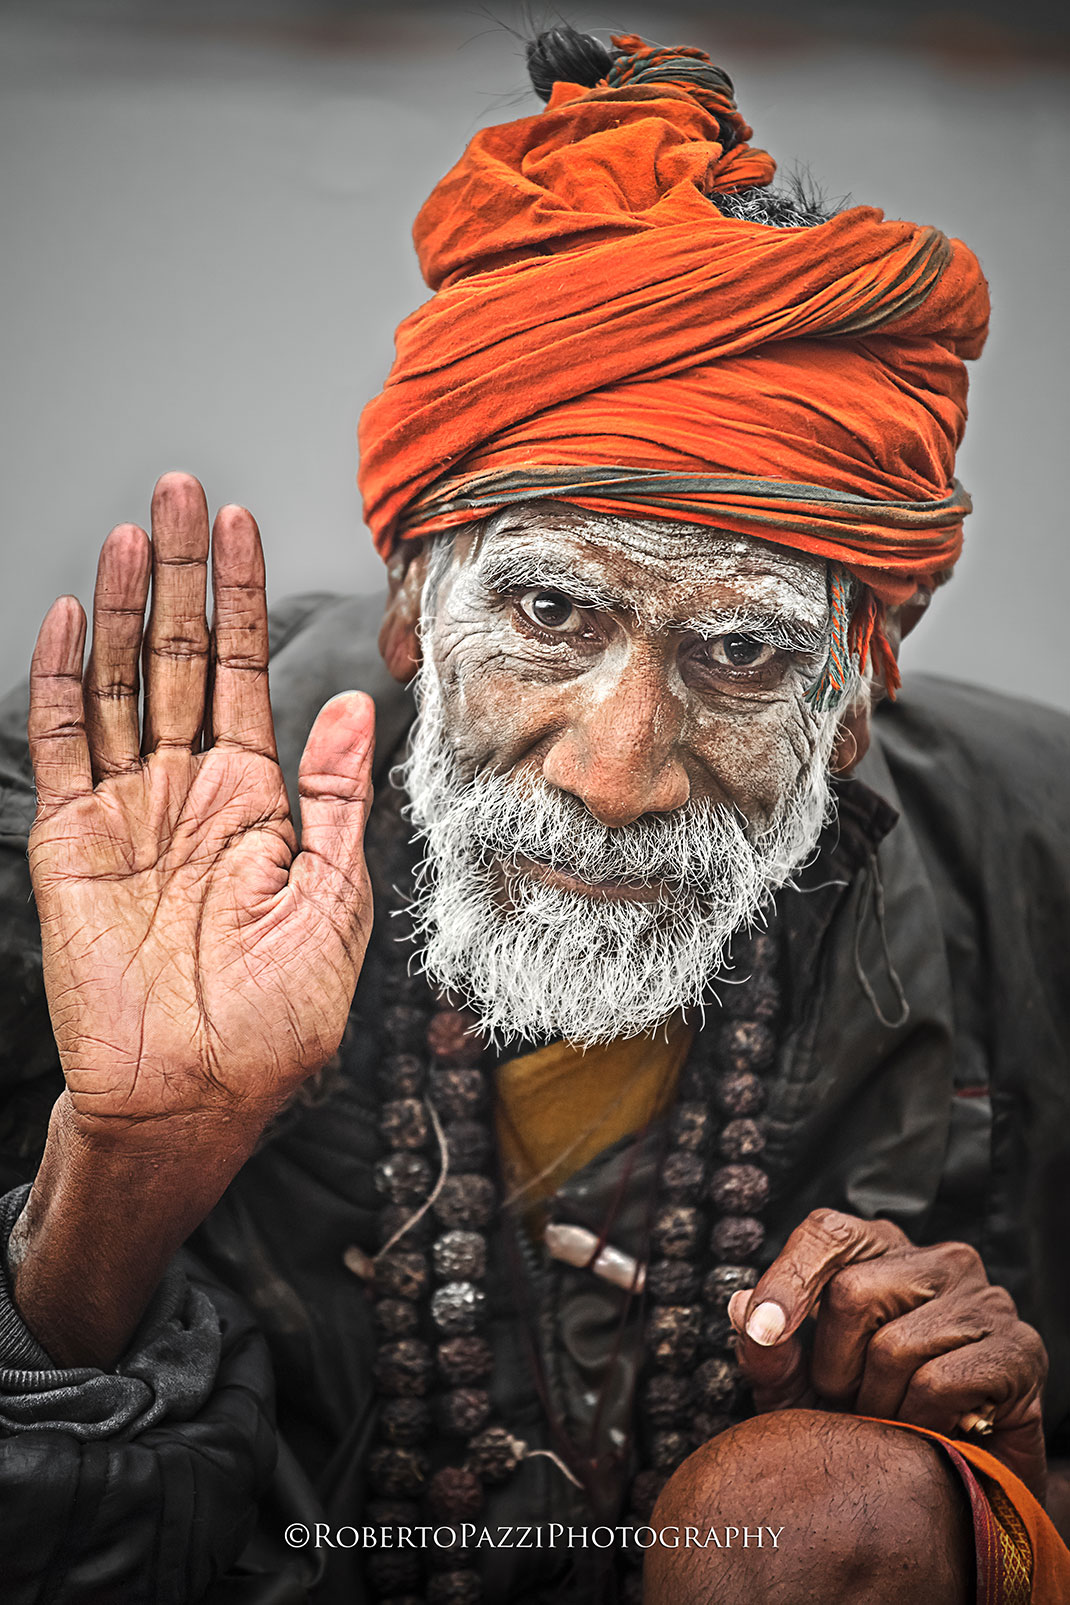 Выразительные портреты бедняков Индии. Фотограф Роберто Пацци-6